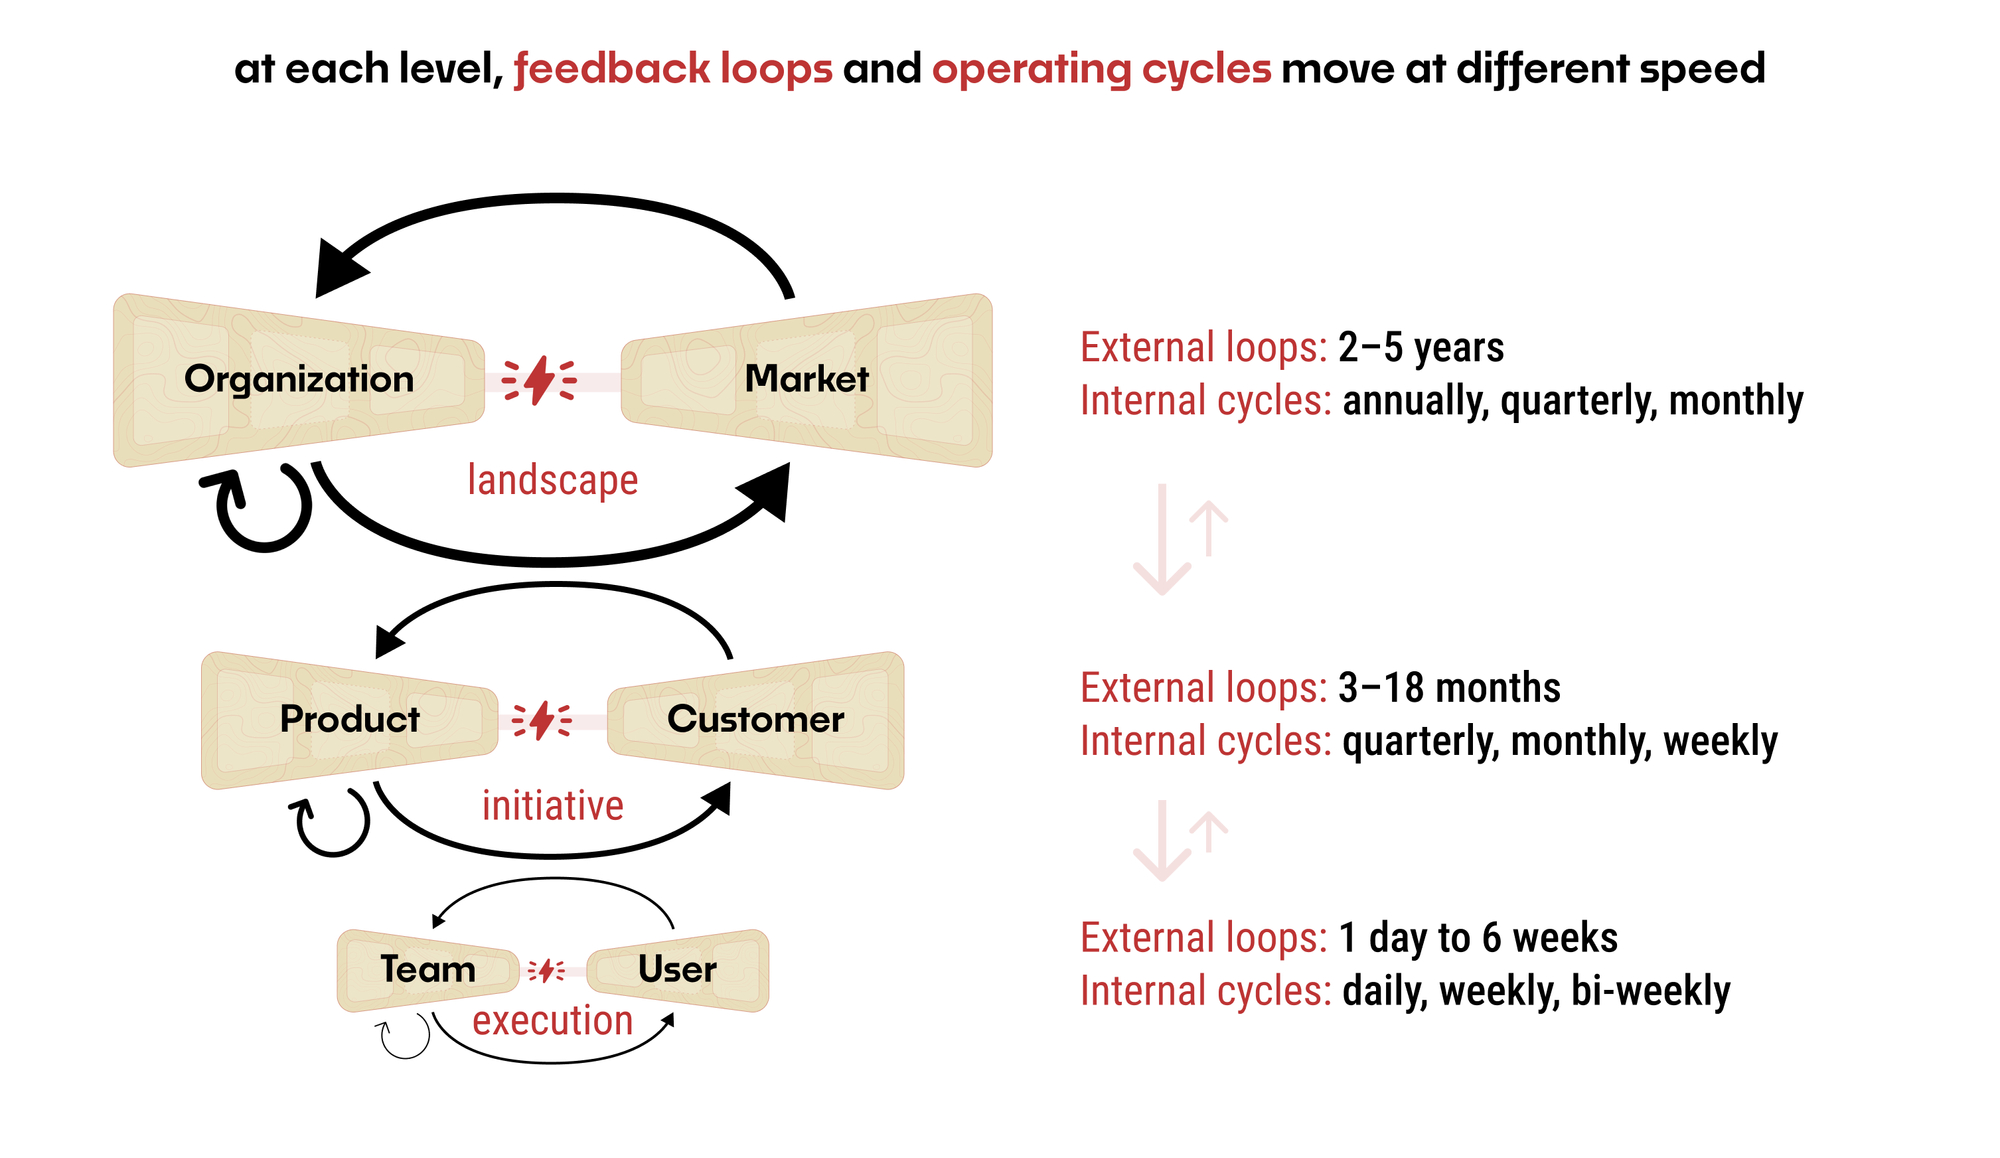 External Loops vs. Internal Cycles